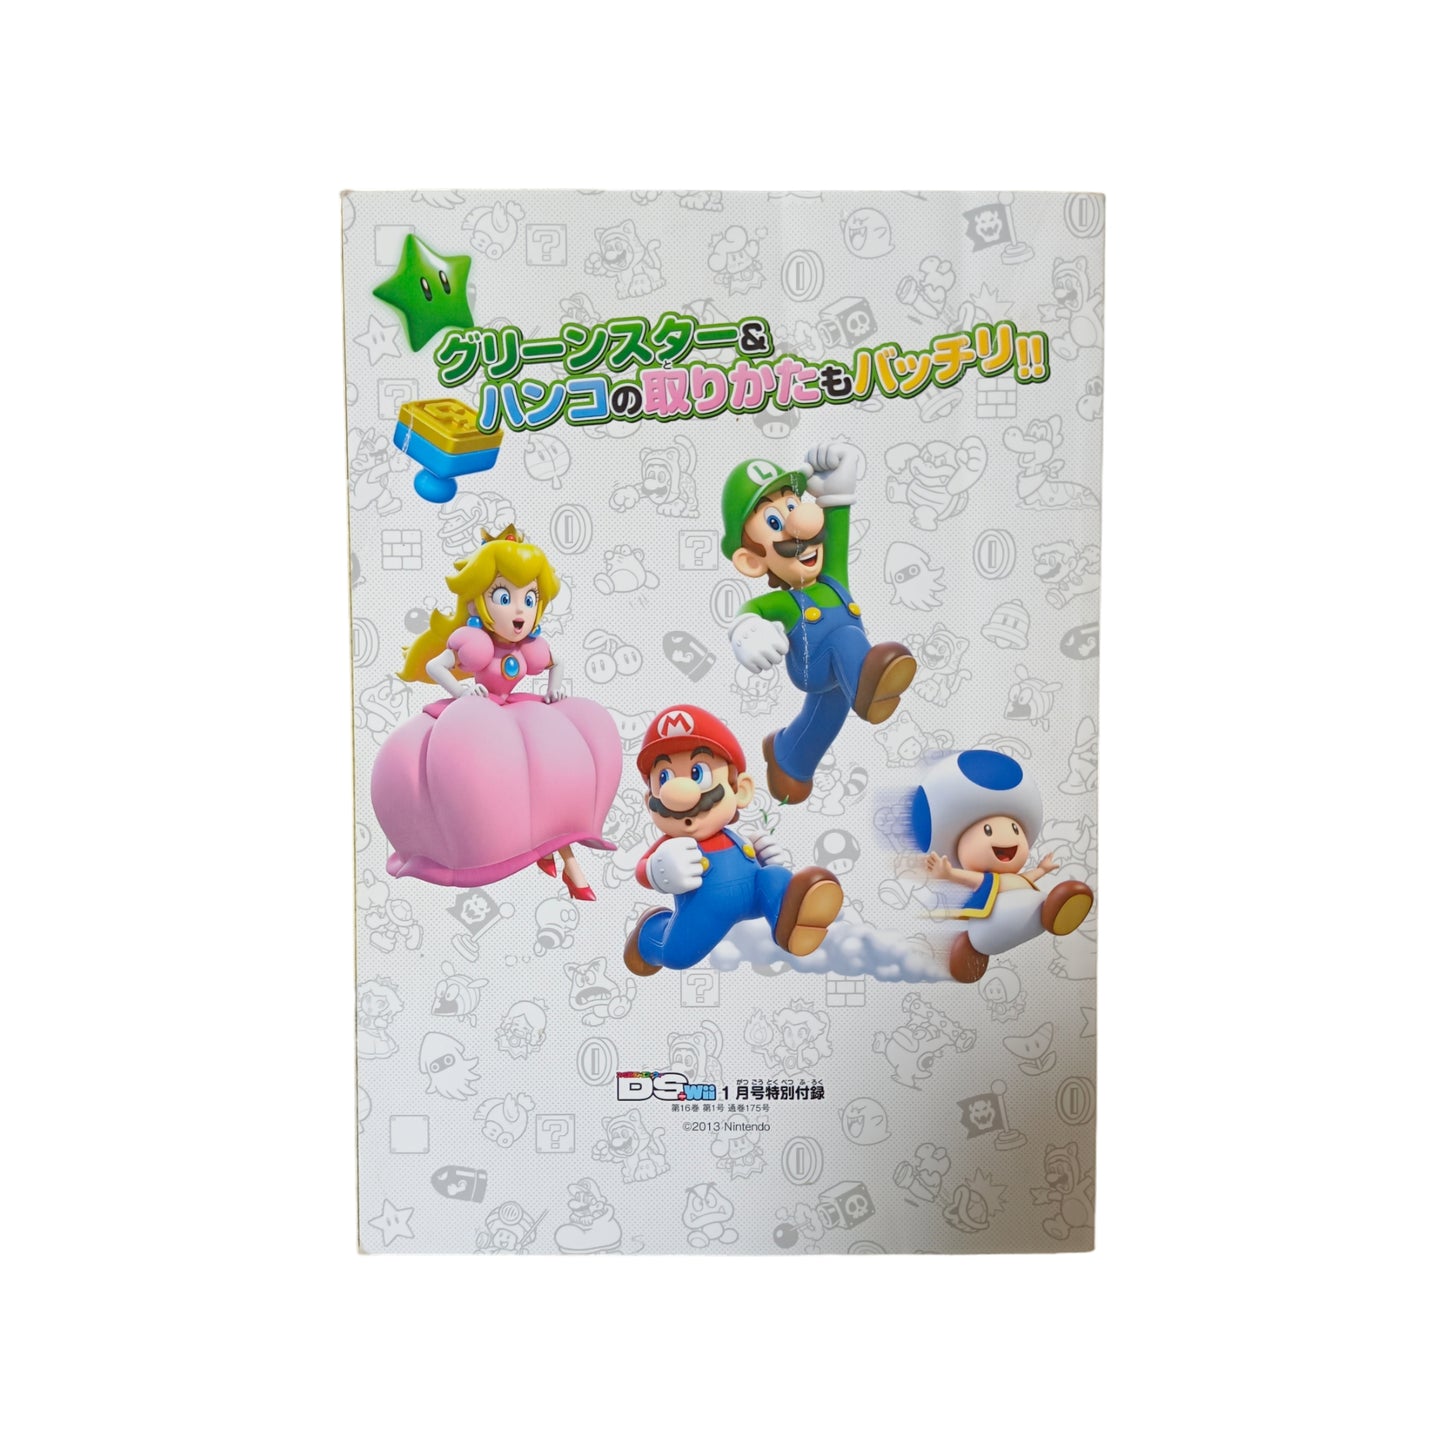 Guide Super Mario 3D World